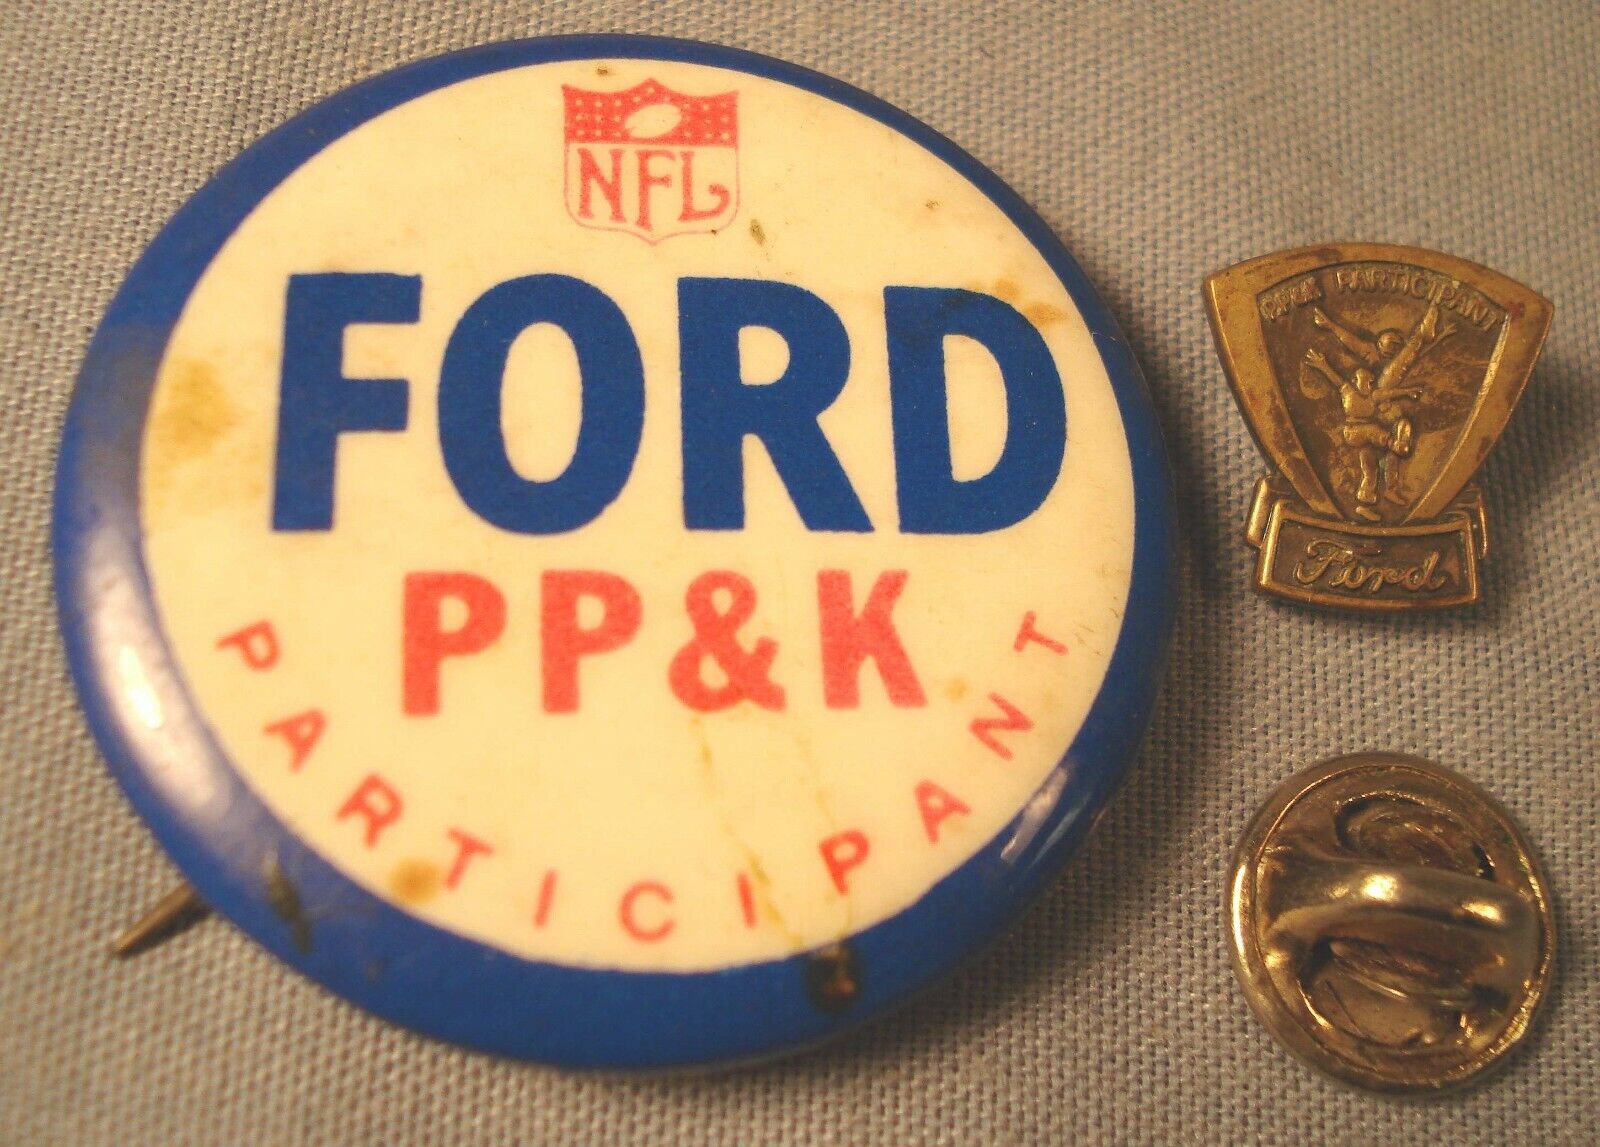 2 Vintage FORD / NFL Punt Pass Kick Participant Lapel Pins